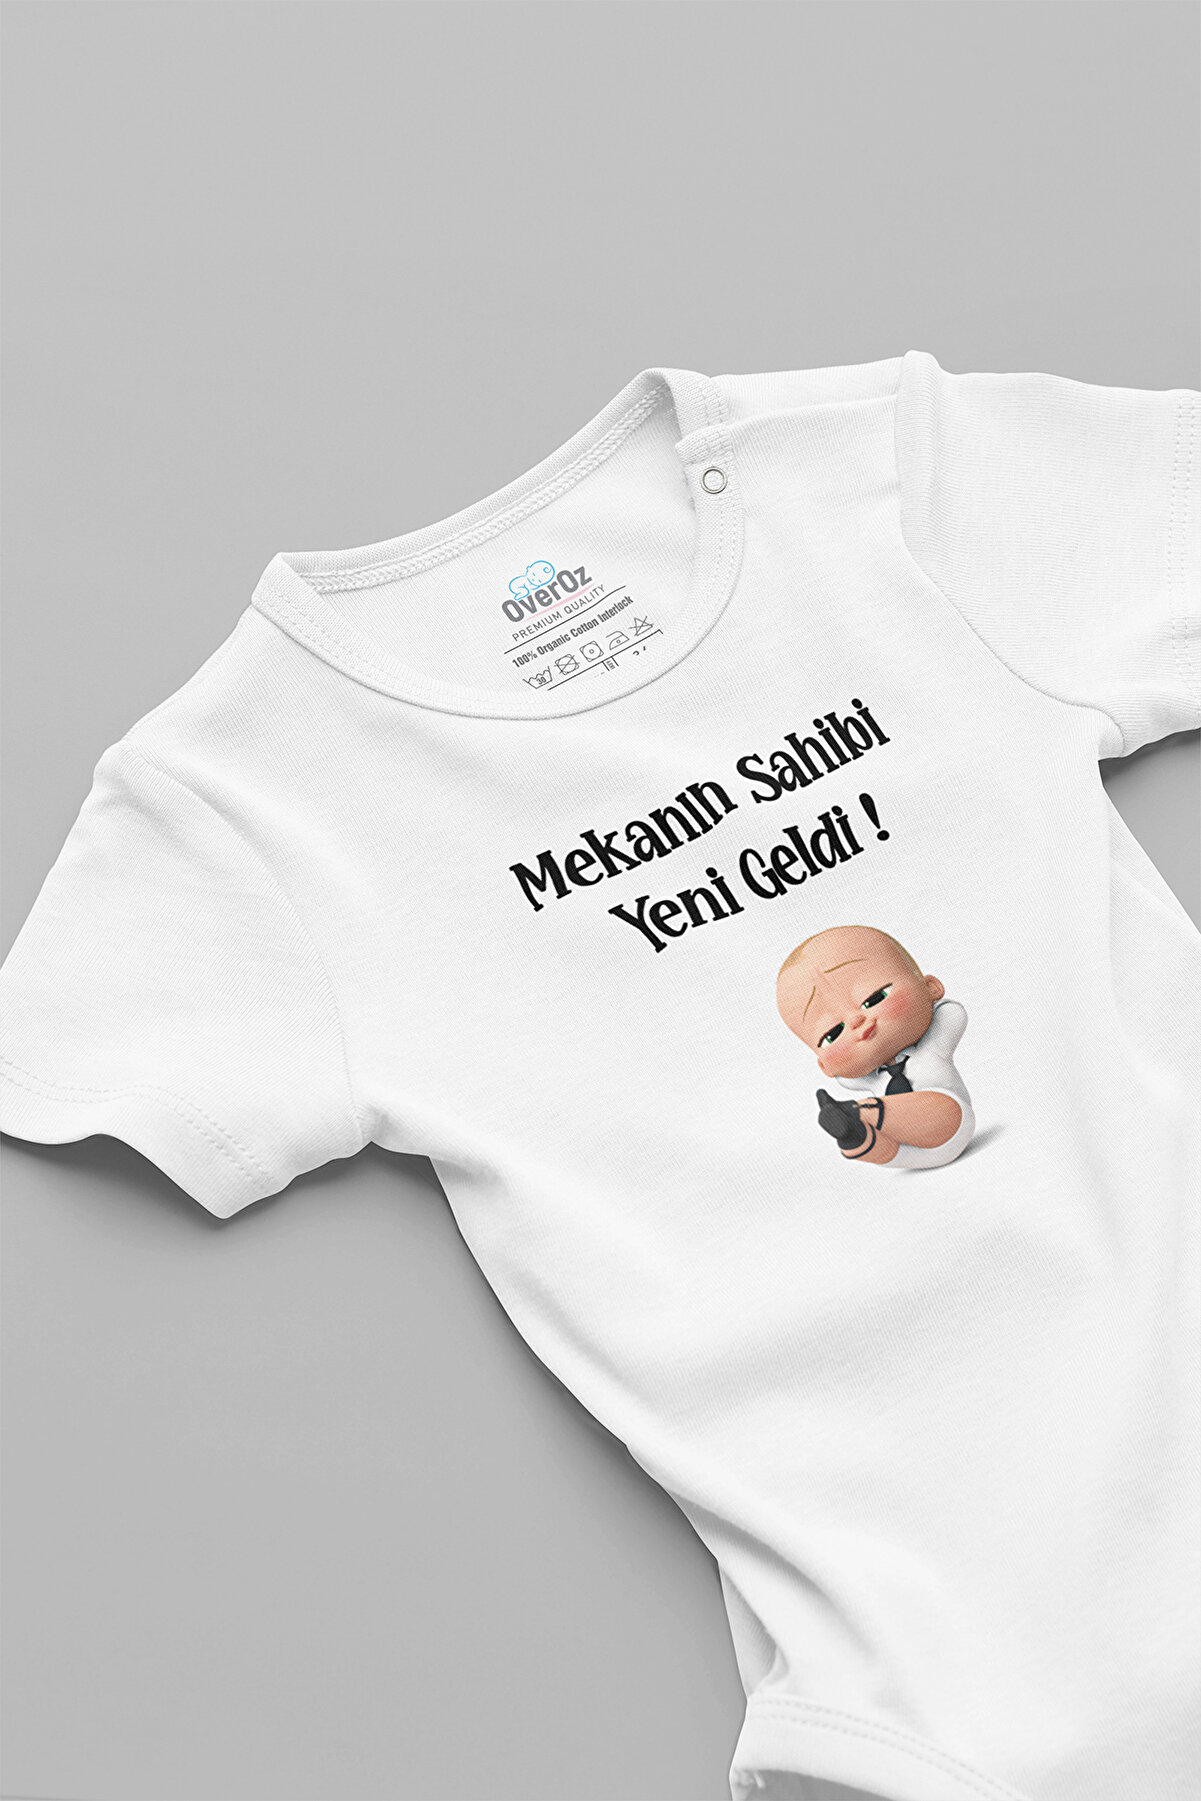 Overoz Özel Tasarım Patron Bebek Mekanın Sahibi Yeni Geldi Yazılı Bebek Body Beyaz Badi Zıbın 5128